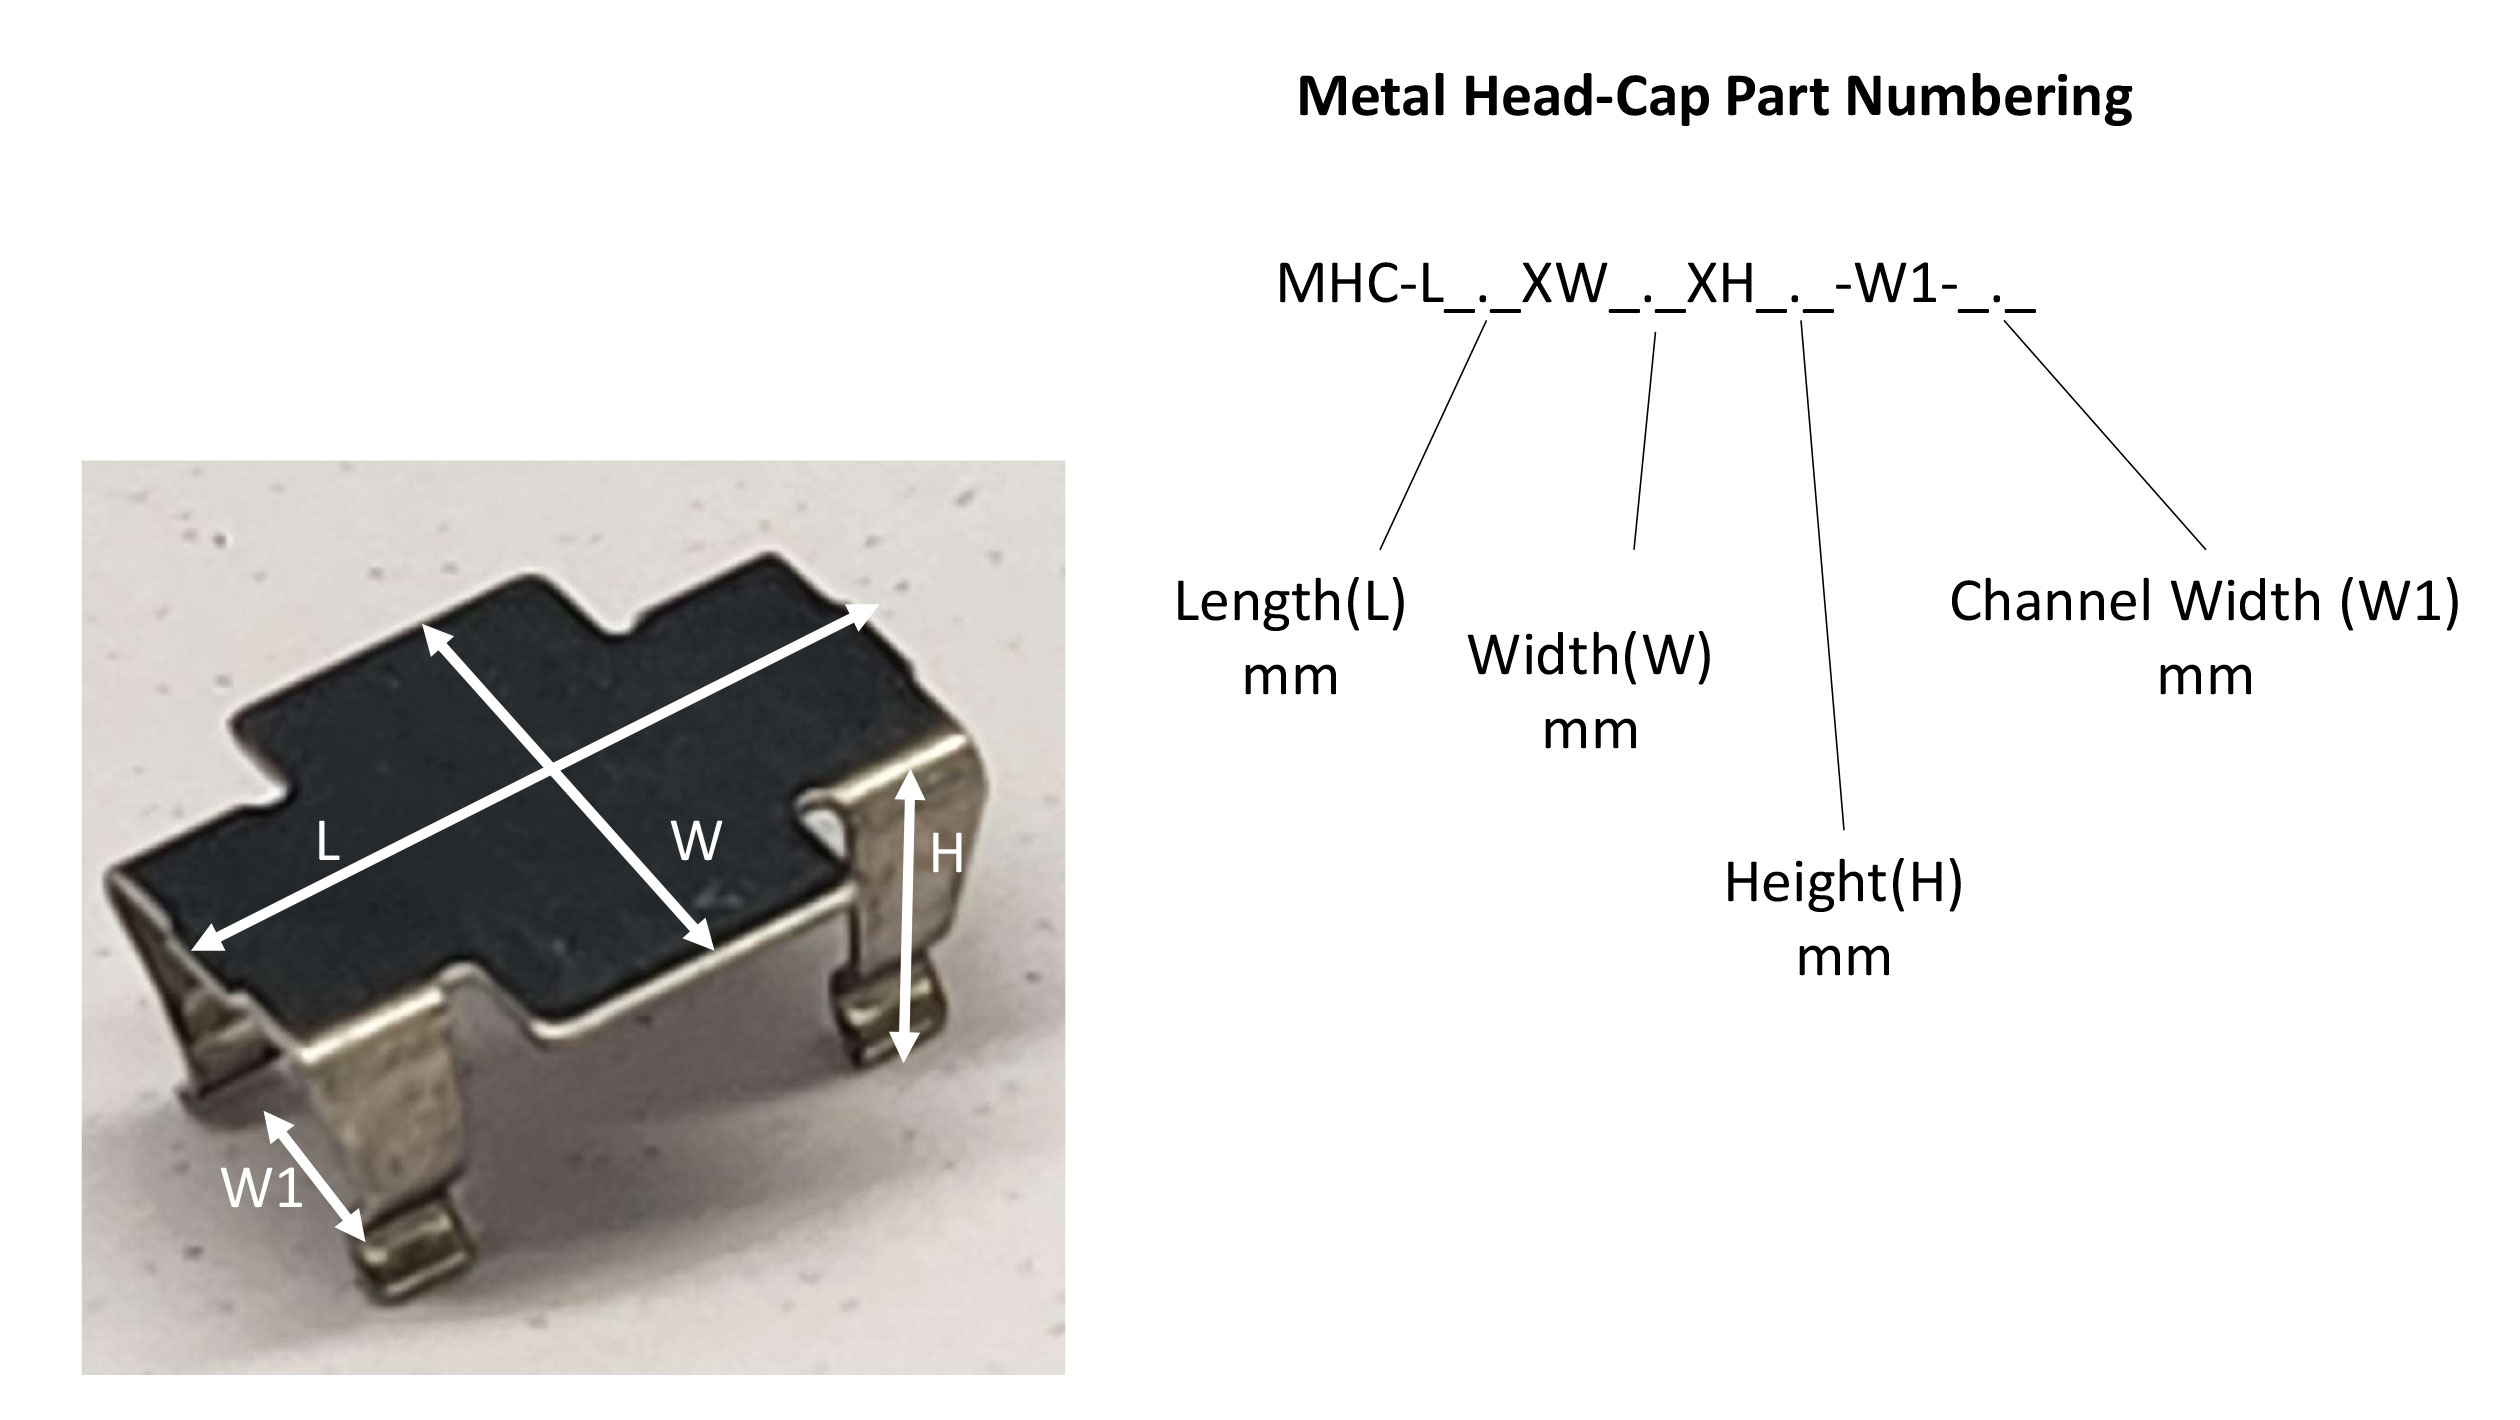 Metal Head-Cap Definitions